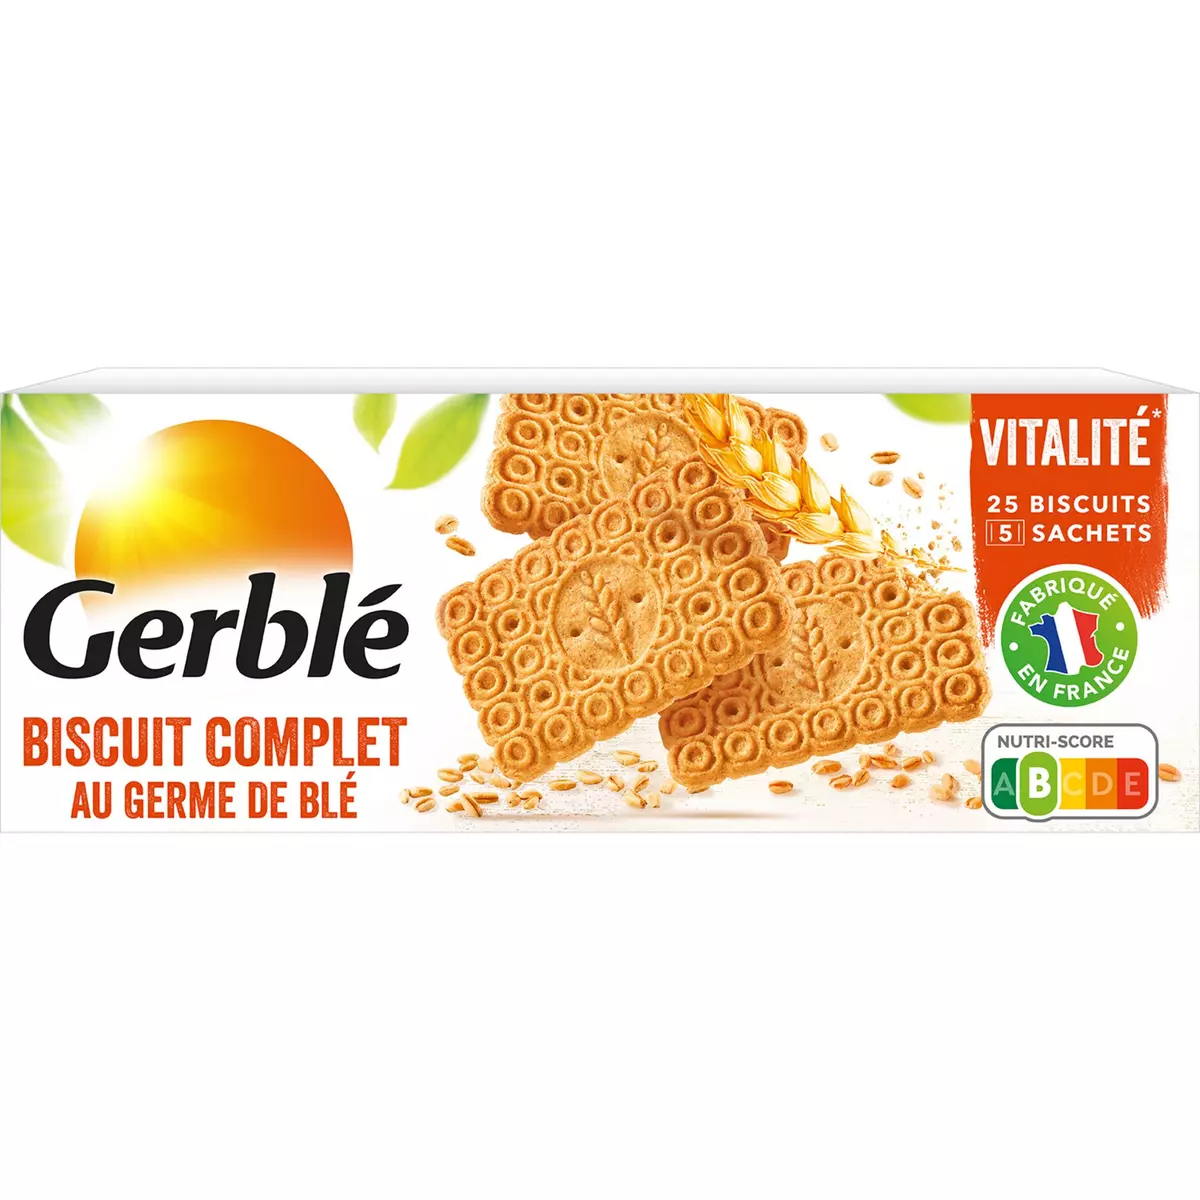 GERBLE Biscuits complets au germe de blé sachets fraîcheur 5x5 biscuits 210g